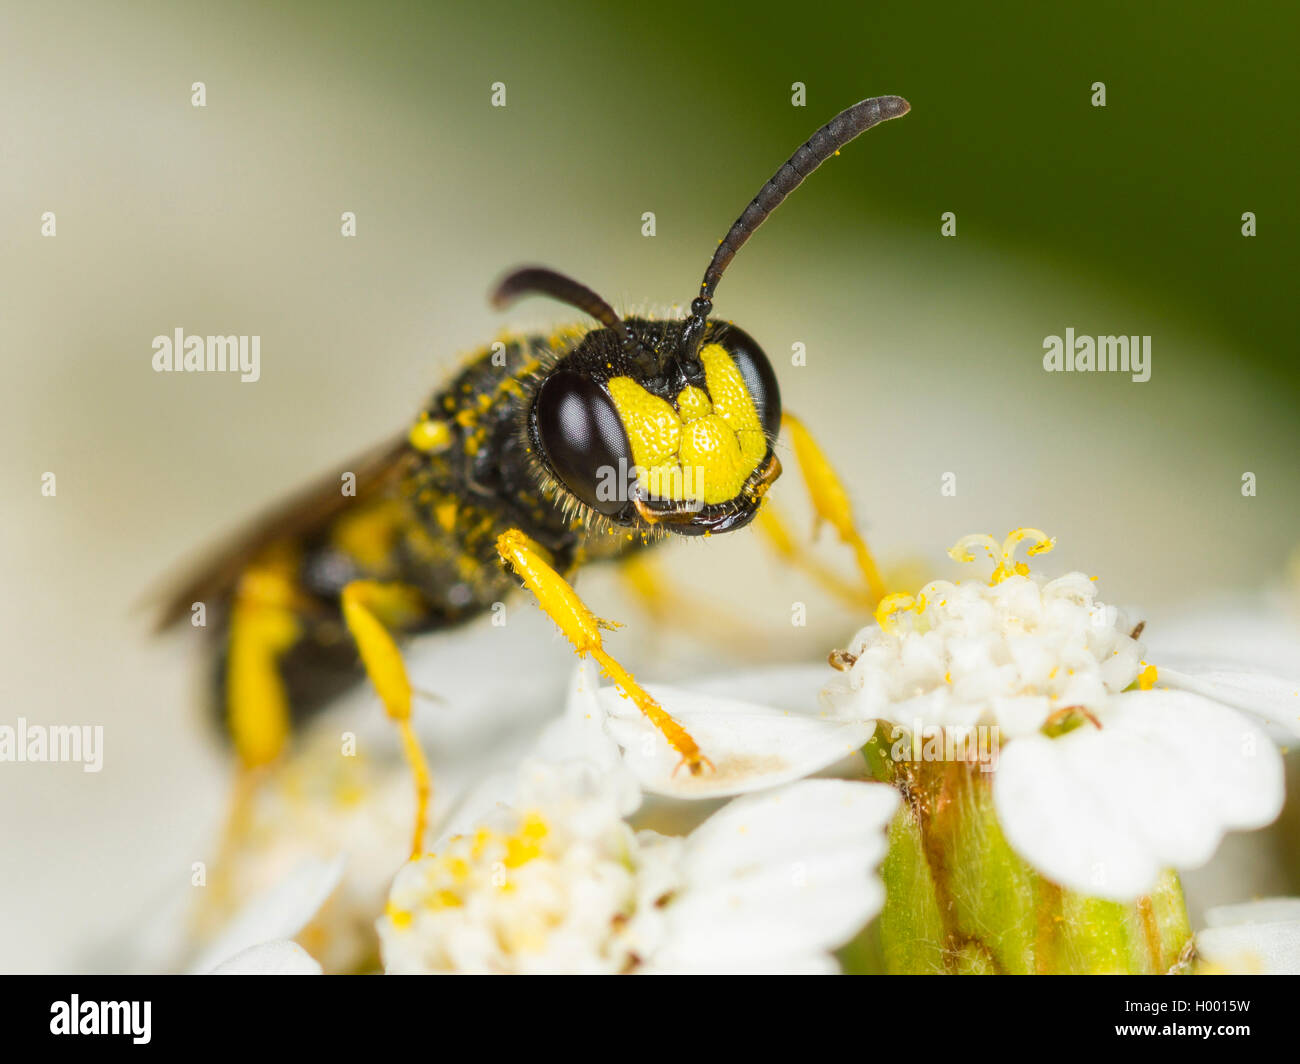 Queue ornée Digger Wasp (Cerceris rybyensis), homme qui se nourrissent de l'Achillea millefolium Achillée (commune), Allemagne Banque D'Images